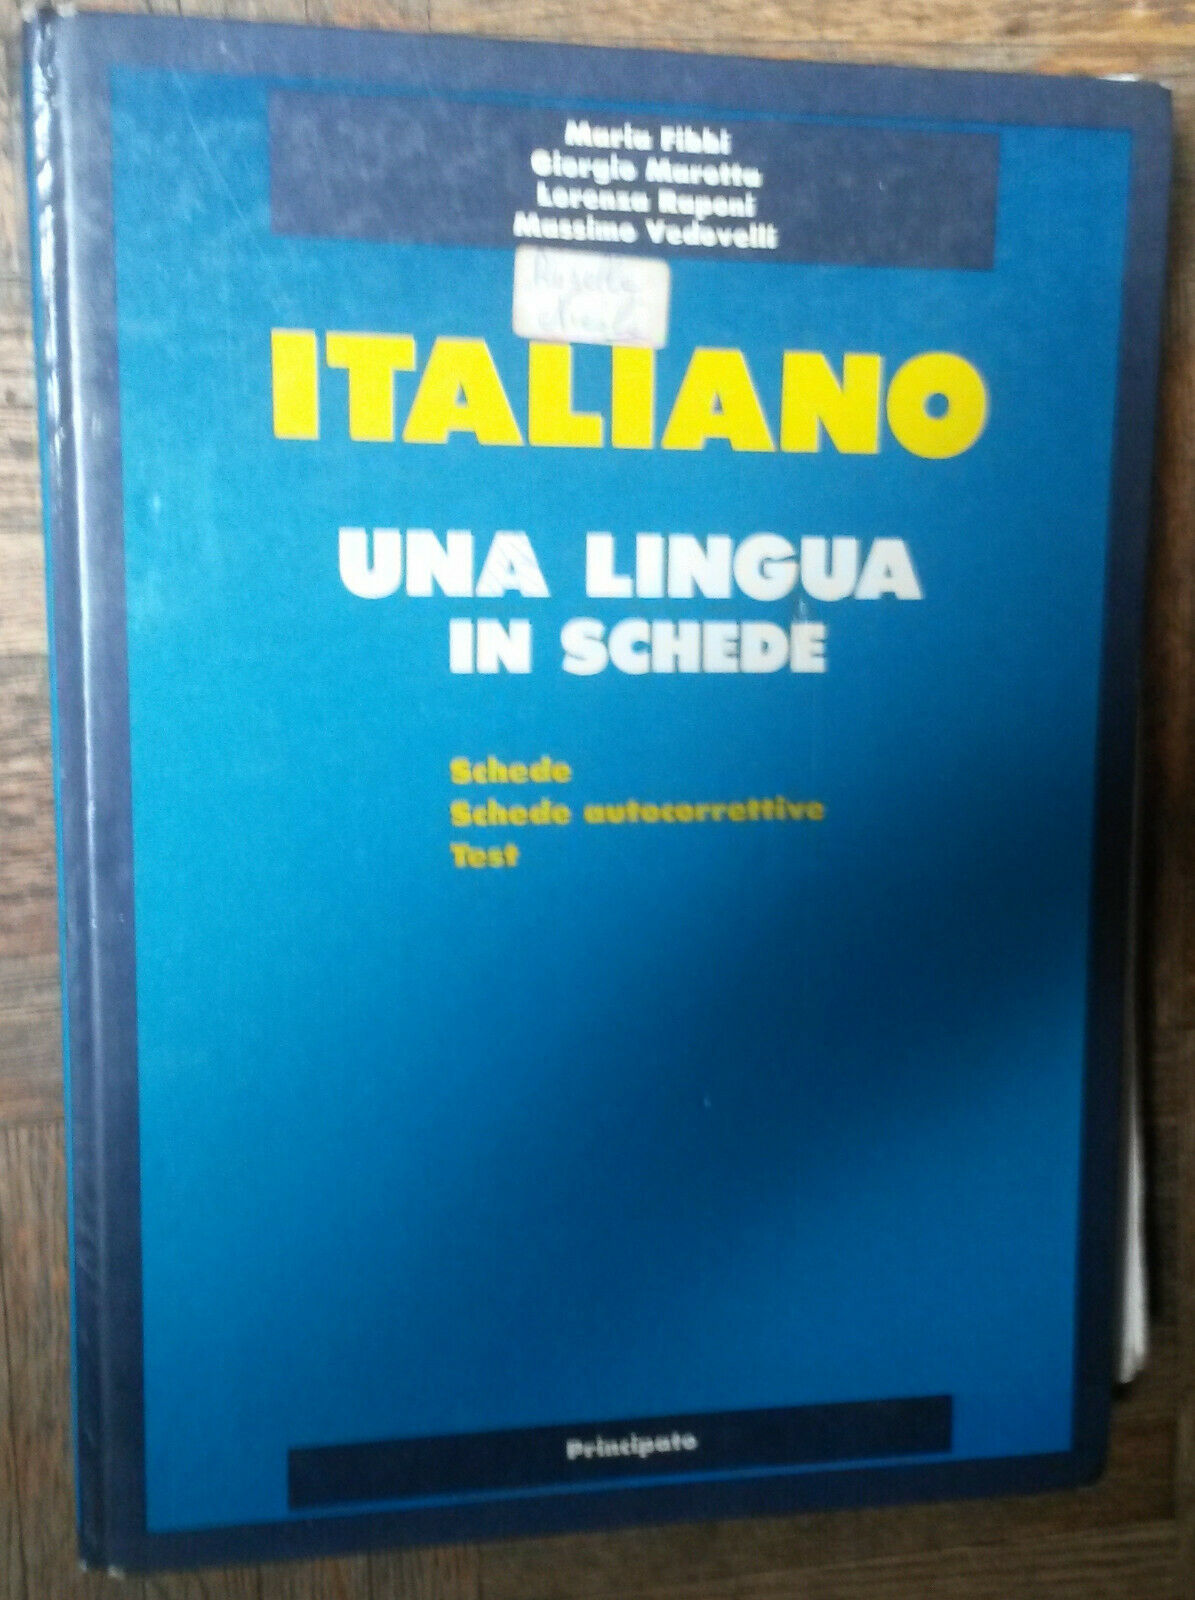 Italiano-Fibbi,Marotta,Raponi,Vedovelli-Principato,1995-R